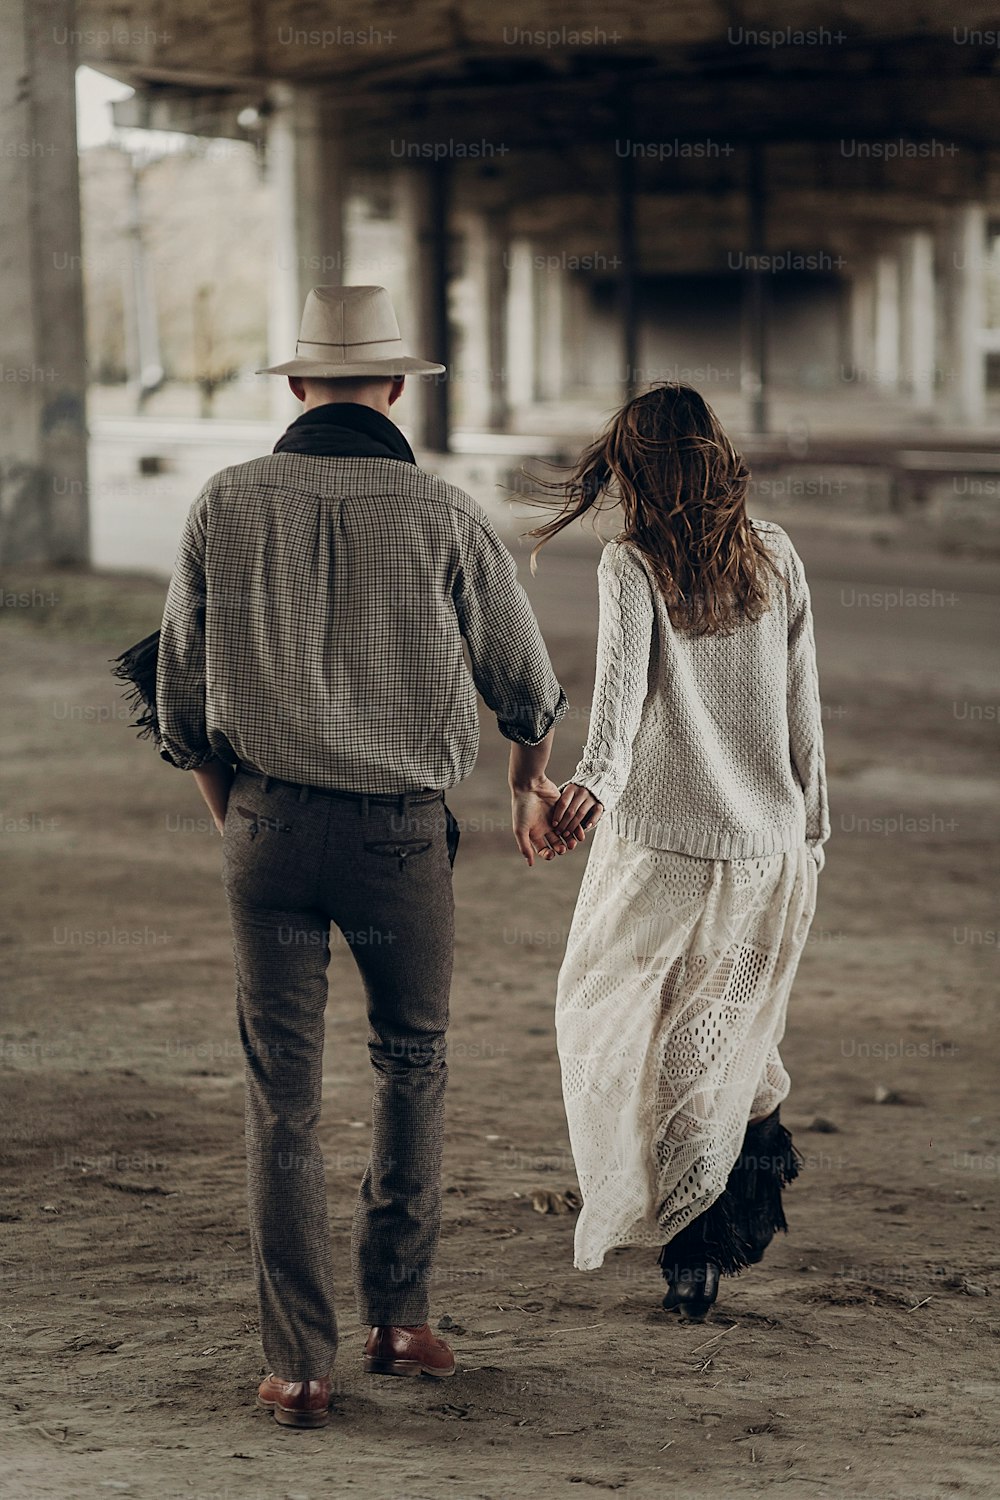 흰 모자를 쓴 잘생긴 텍사스 카우보이 남자가 하얀 드레스를 입은 아름다운 집시 여자와 손을 잡고 있다, 도시에서 산책하는 커플